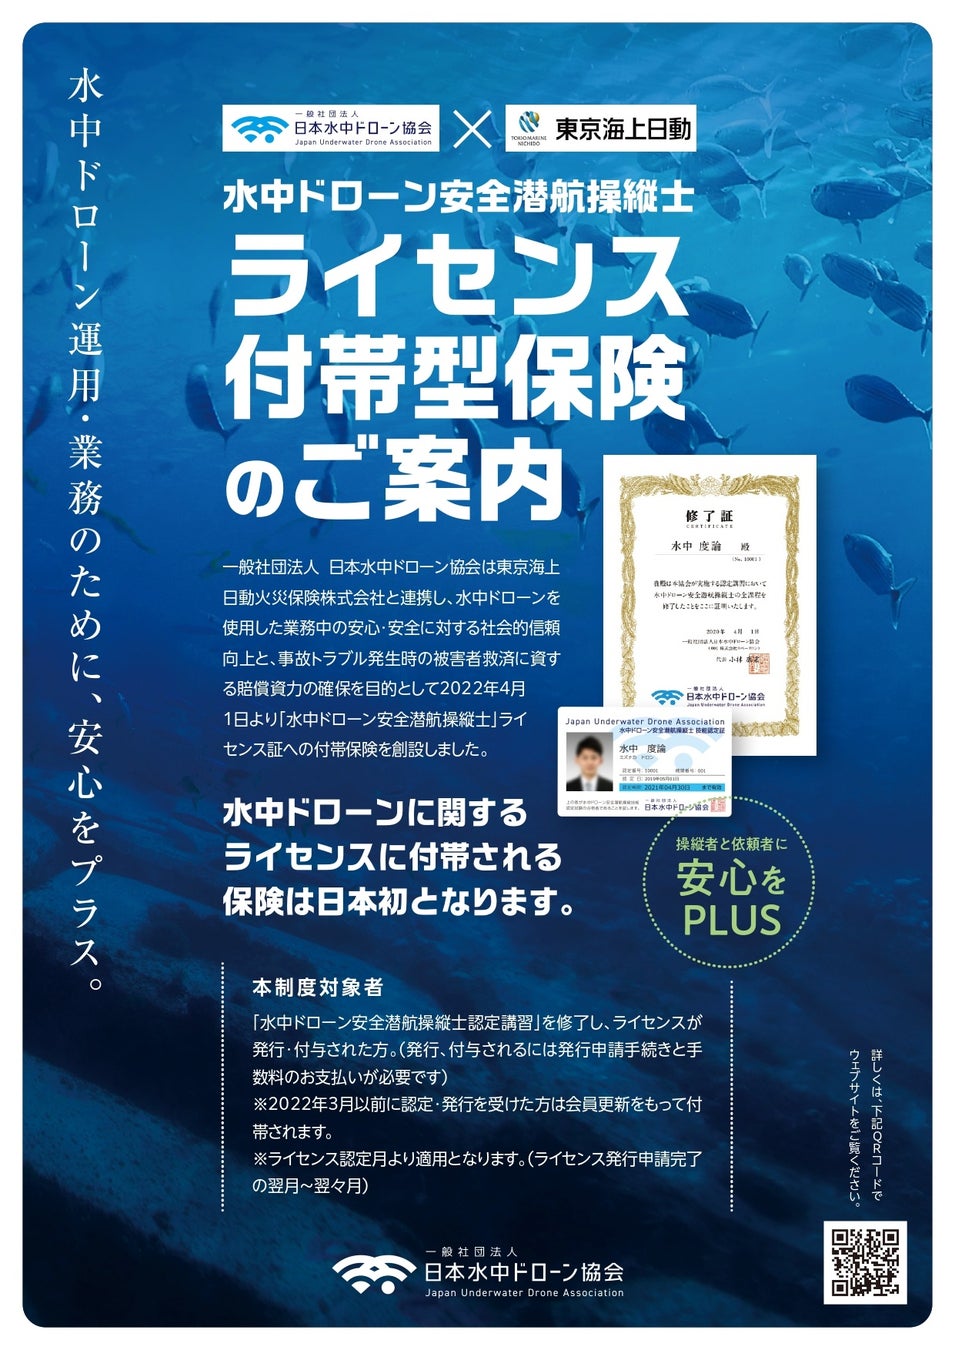 【一社）日本水中ドローン協会】水中ドローンスクール 全国で50校開校、会員数累計1,000名を達成のサブ画像3